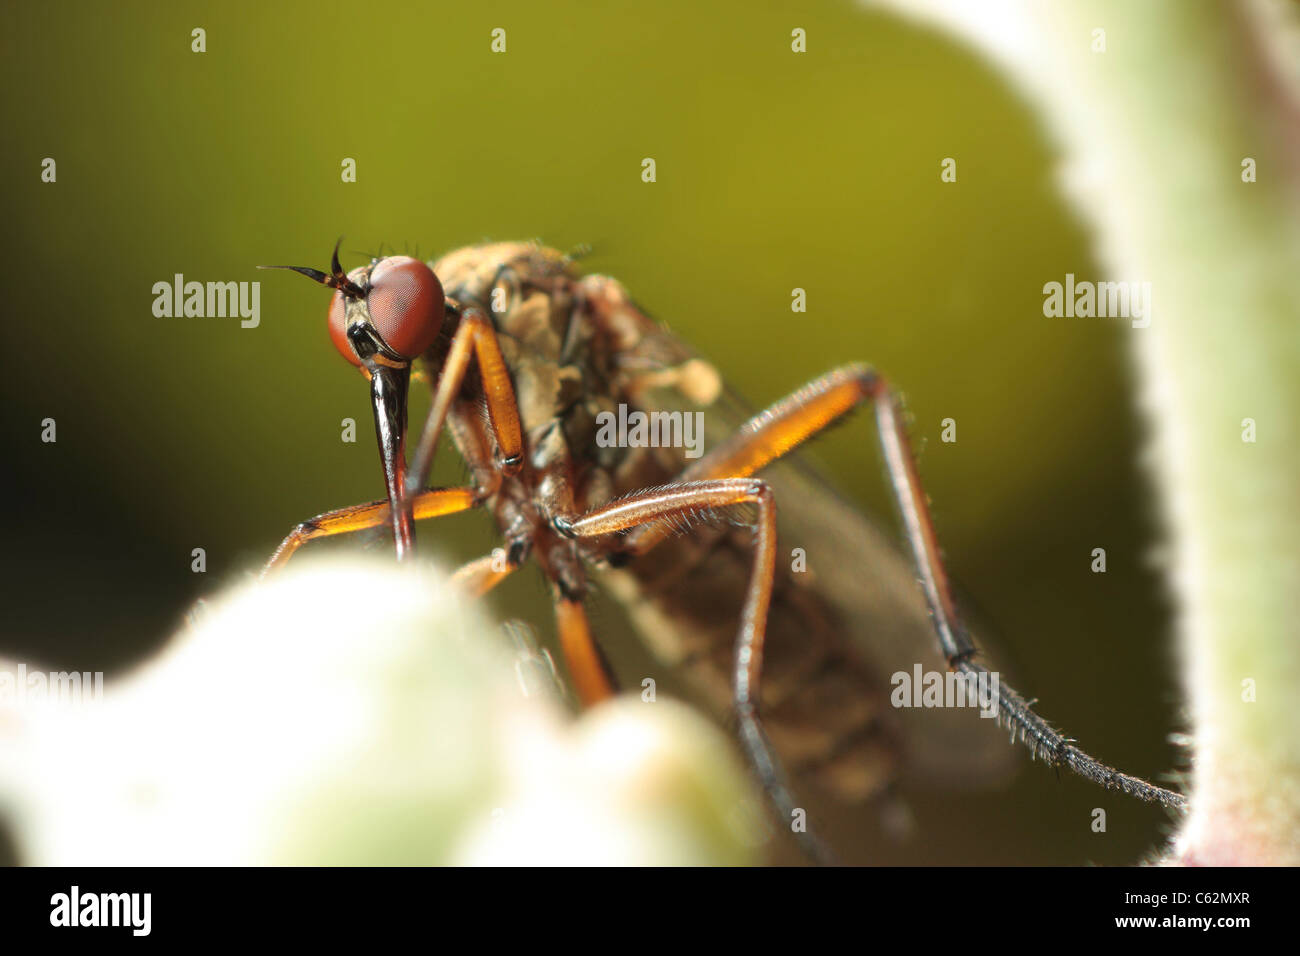 Alta magnificación imagen macro de una mosca empid mostrando sus ojos compuestos. Foto de stock